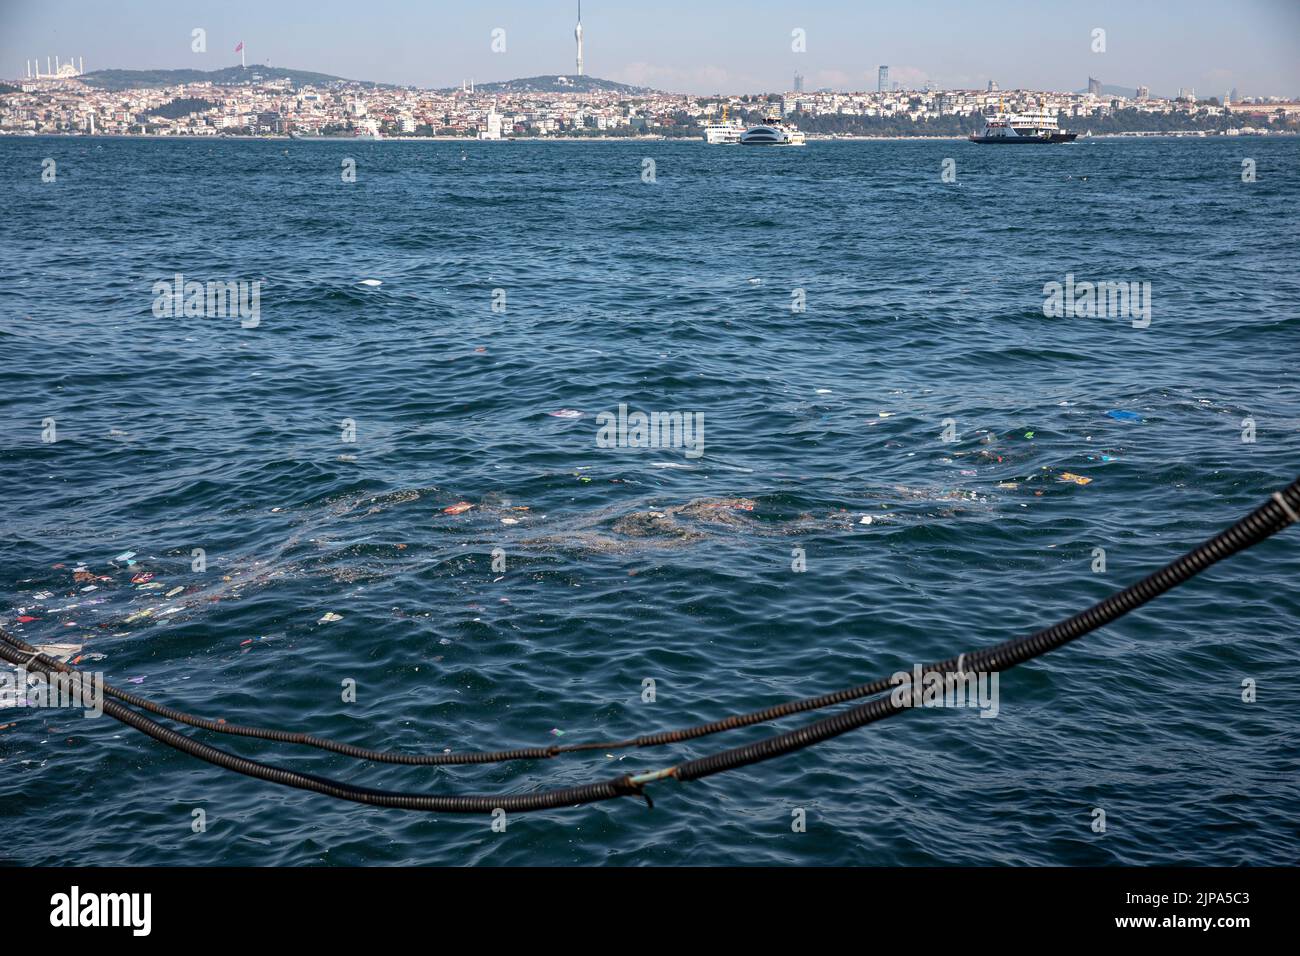 Nach heftigem Regen und einem Sturm in Istanbul schwebt auf der Meeresoberfläche im und um den Pier von Karakoy City Lines herum Einweg-Plastikmüll. Stockfoto